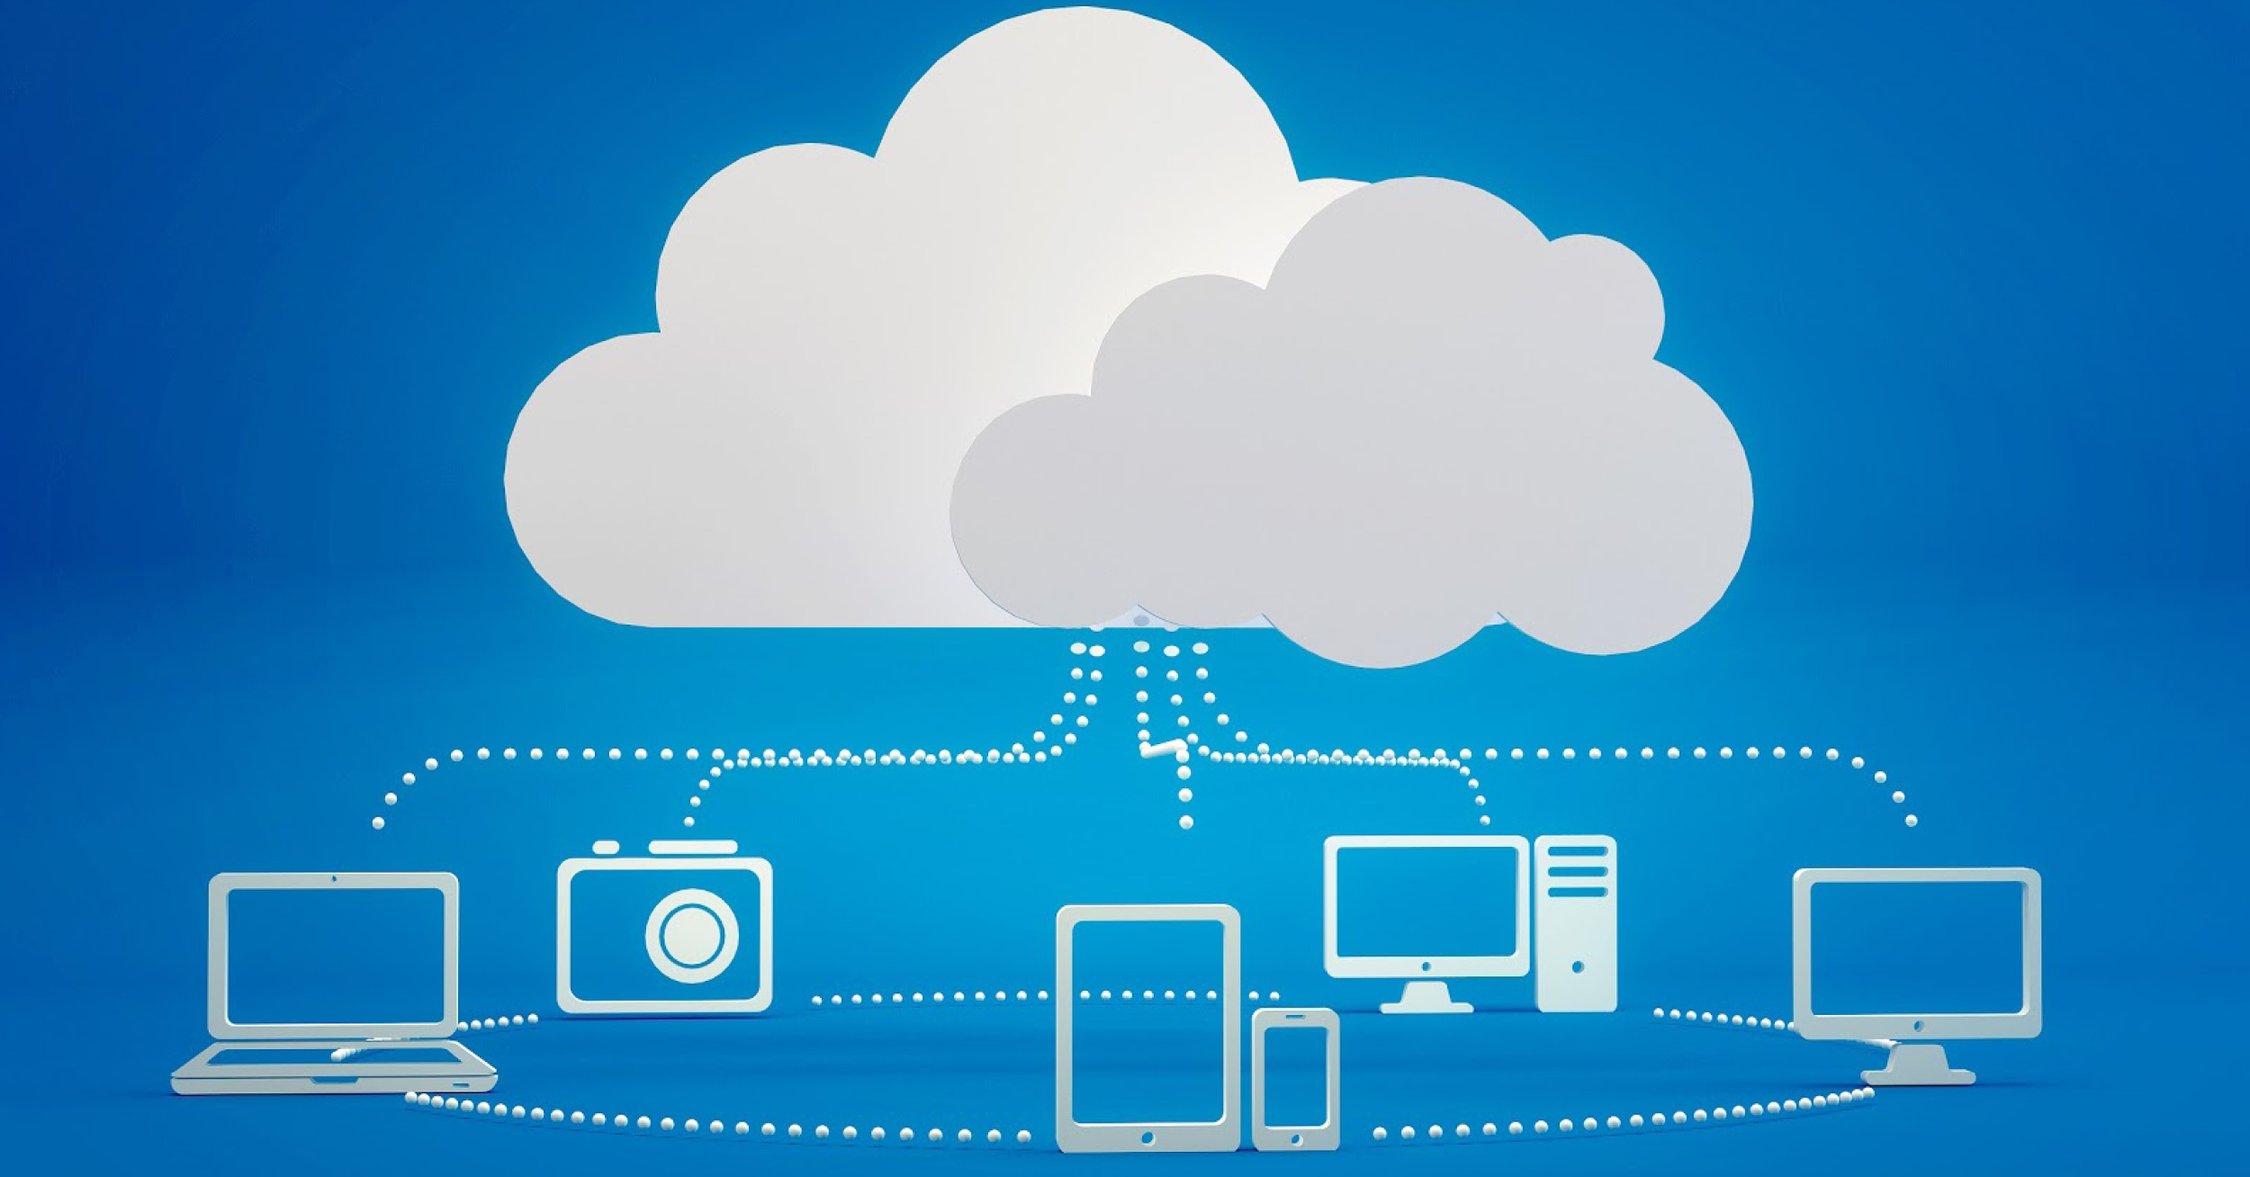 Cloud applications. Облачные технологии. Облачный провайдер. Облачный сервер. Облачные технологии это и облачные сервисы.